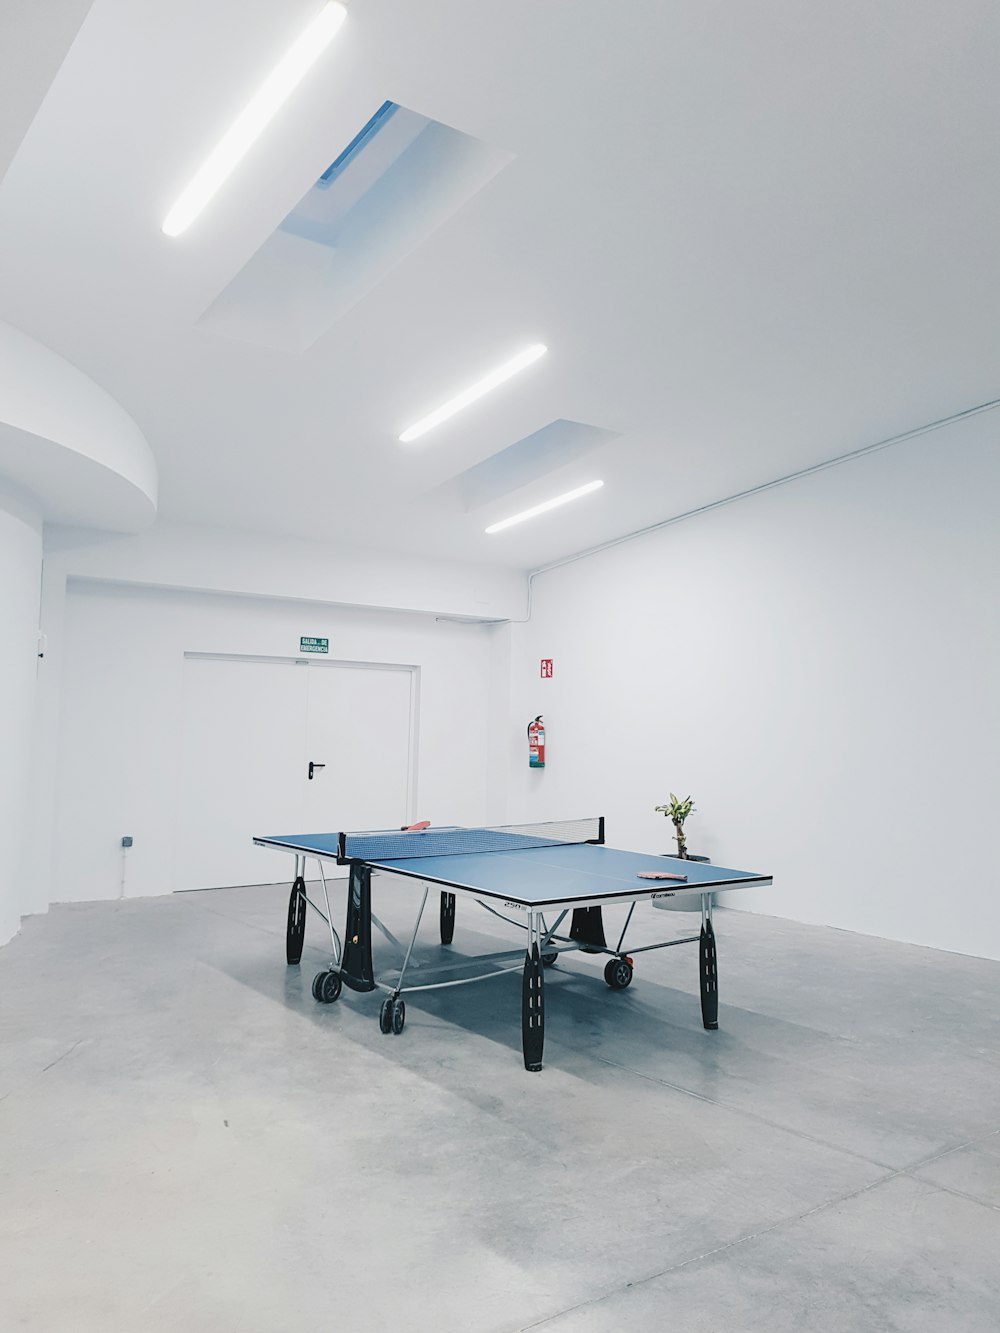 Fotografie von blauem Tischtennis in einem Raum